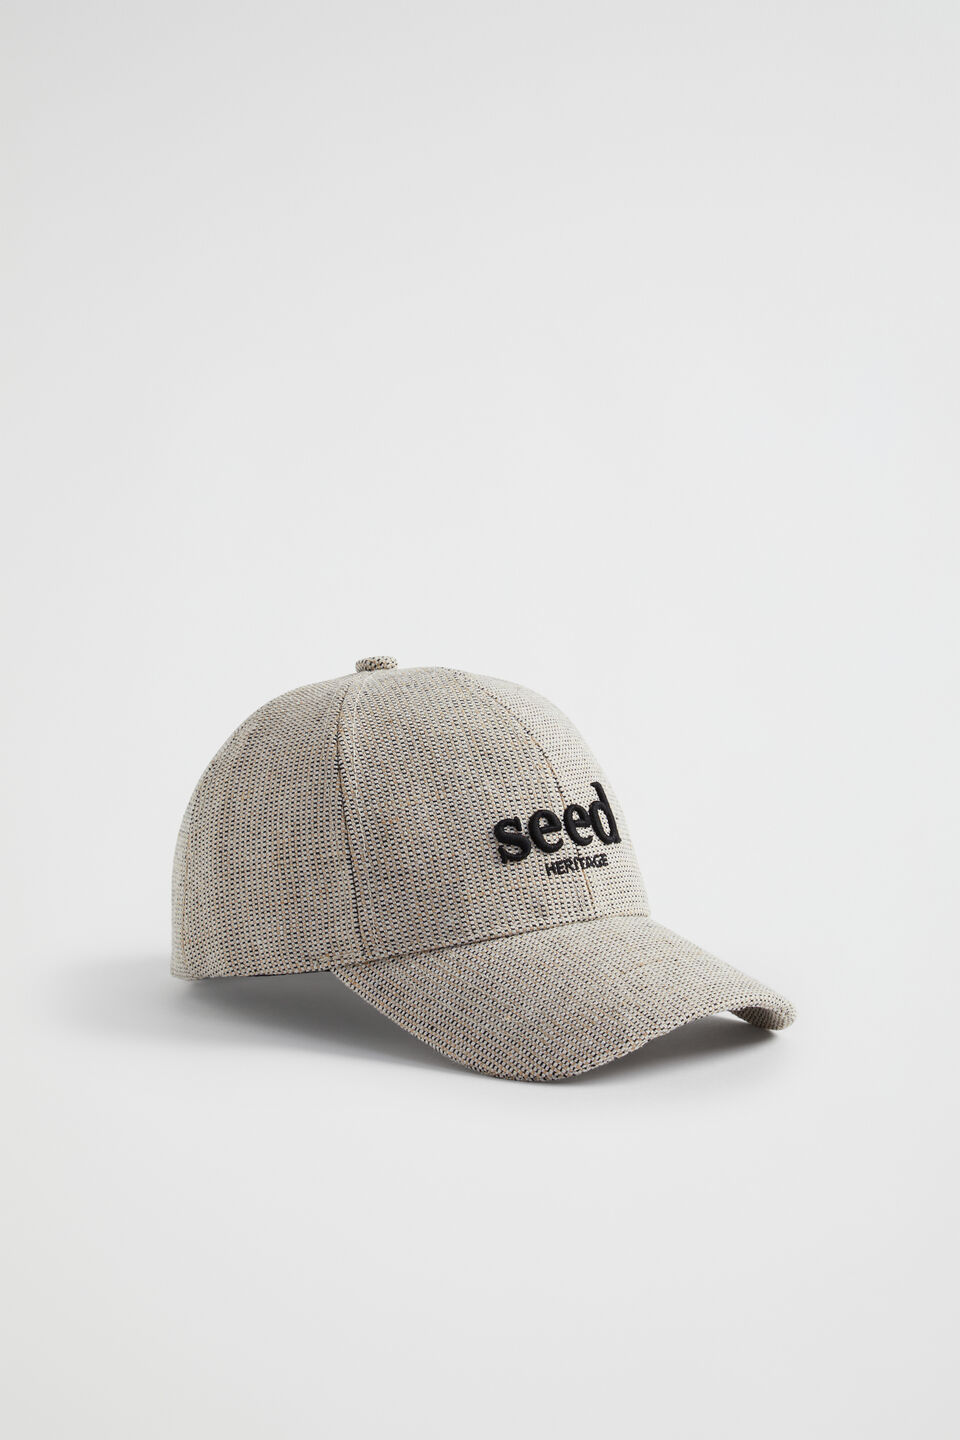 Seed Cap  Black Natural